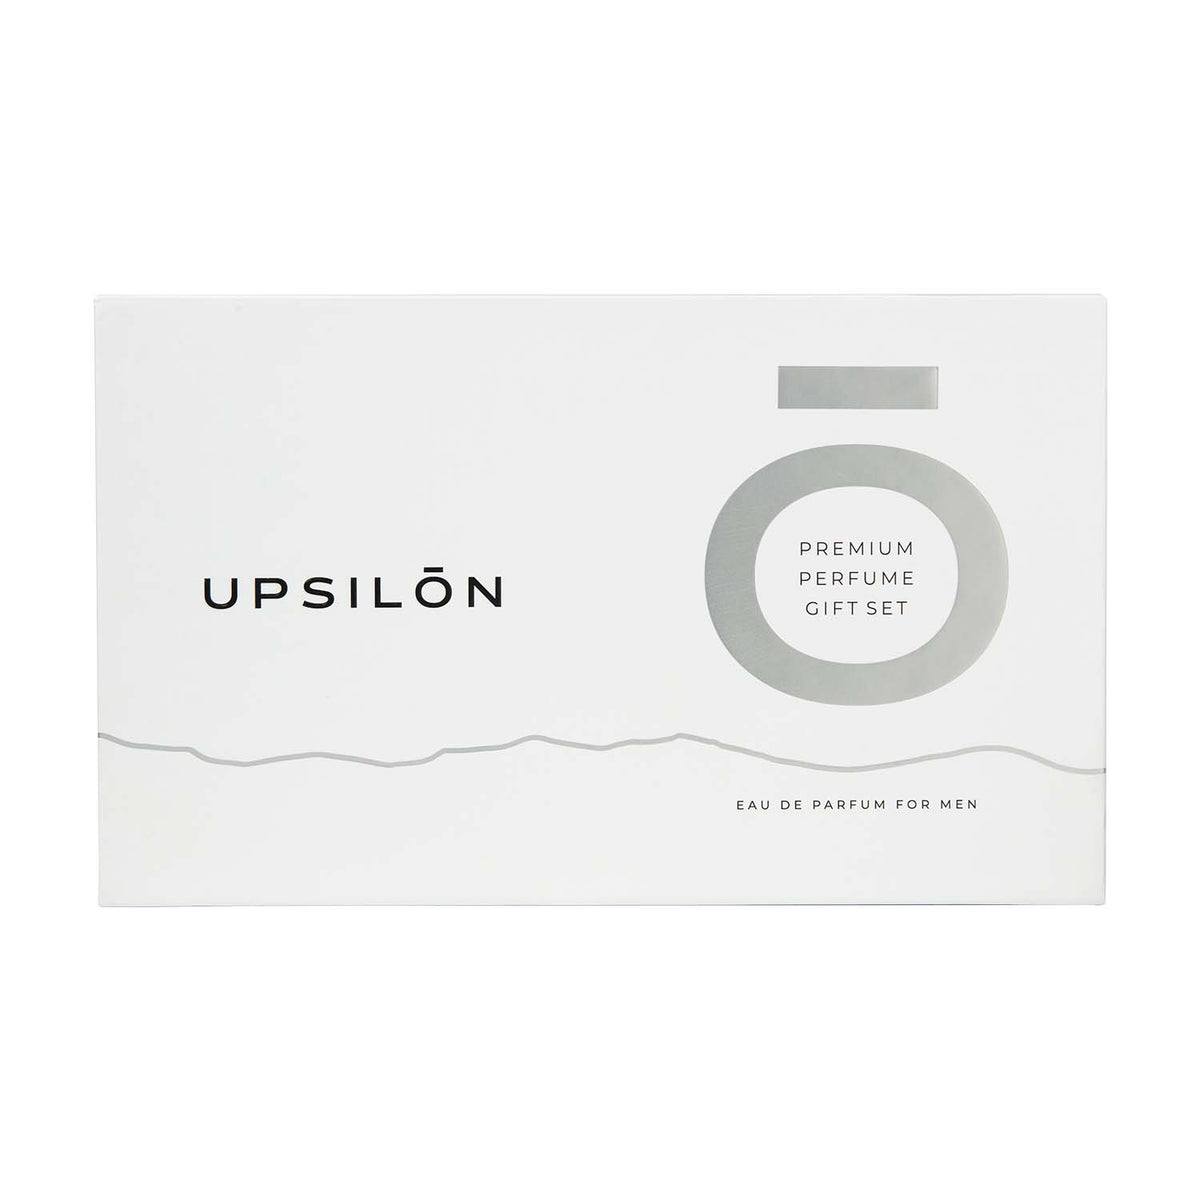 Upsilon Eau de Parfum for Men, a premium perfume gift set